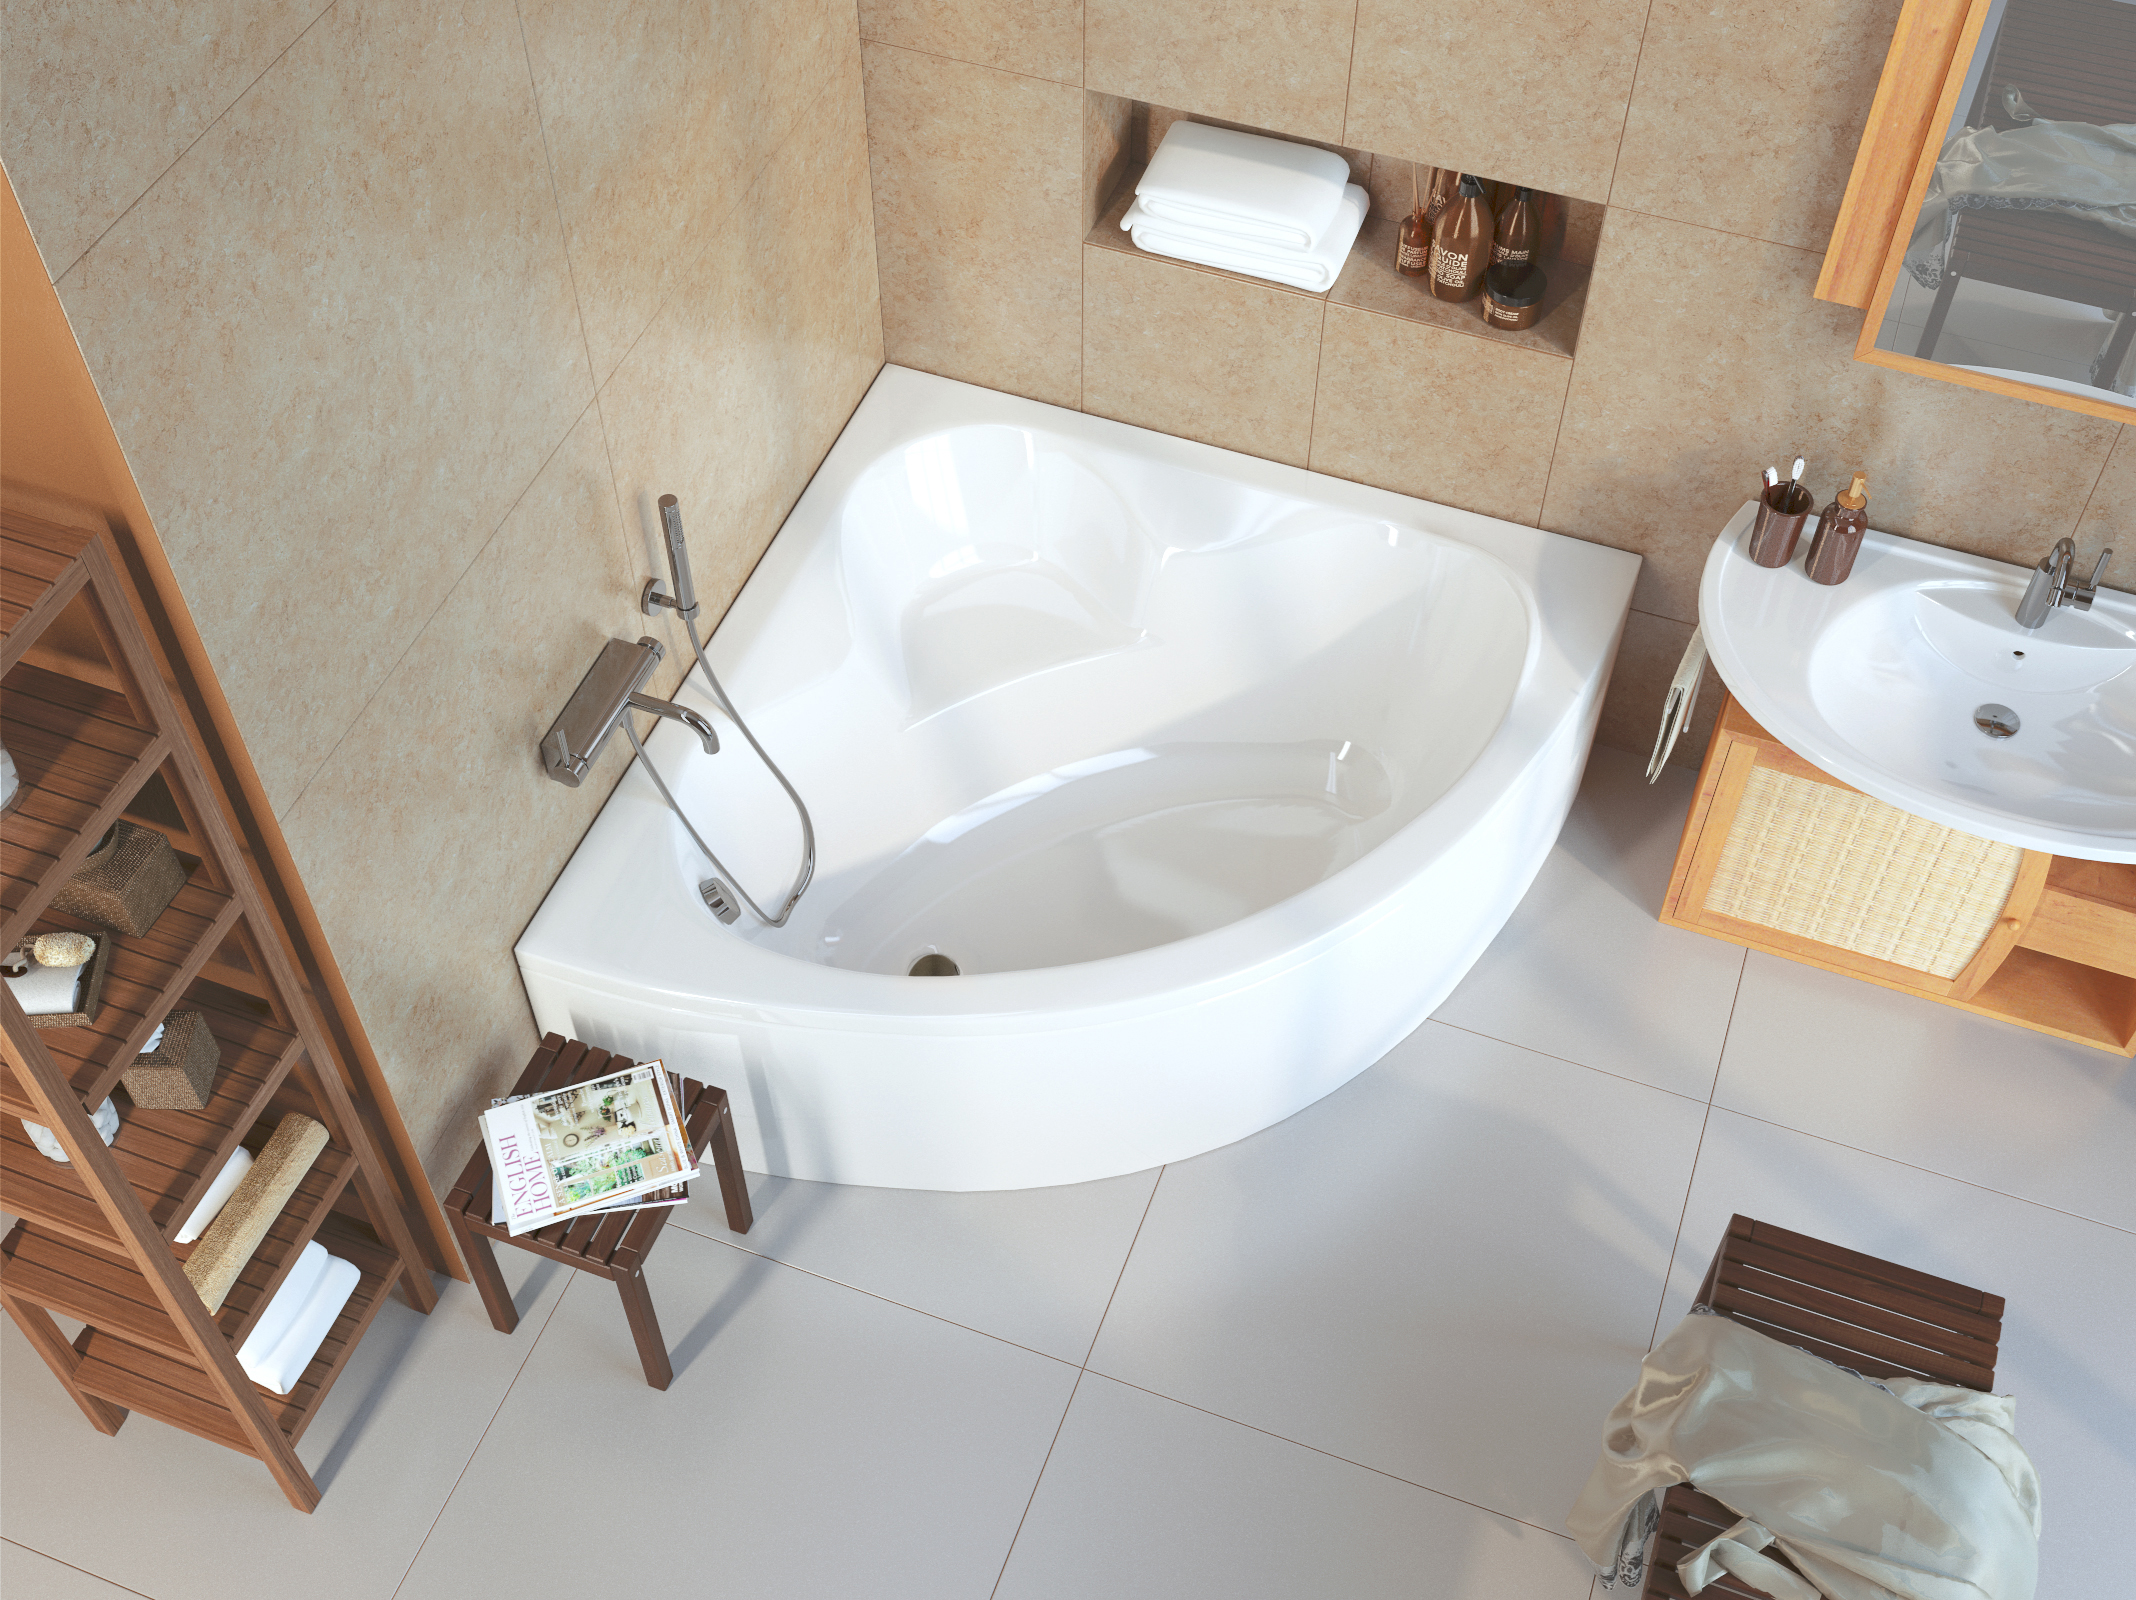 Как выбрать акриловую ванну: советы экспертов, какую выбрать, как правильно выбрать, какая должна быть толщина, какие лучше